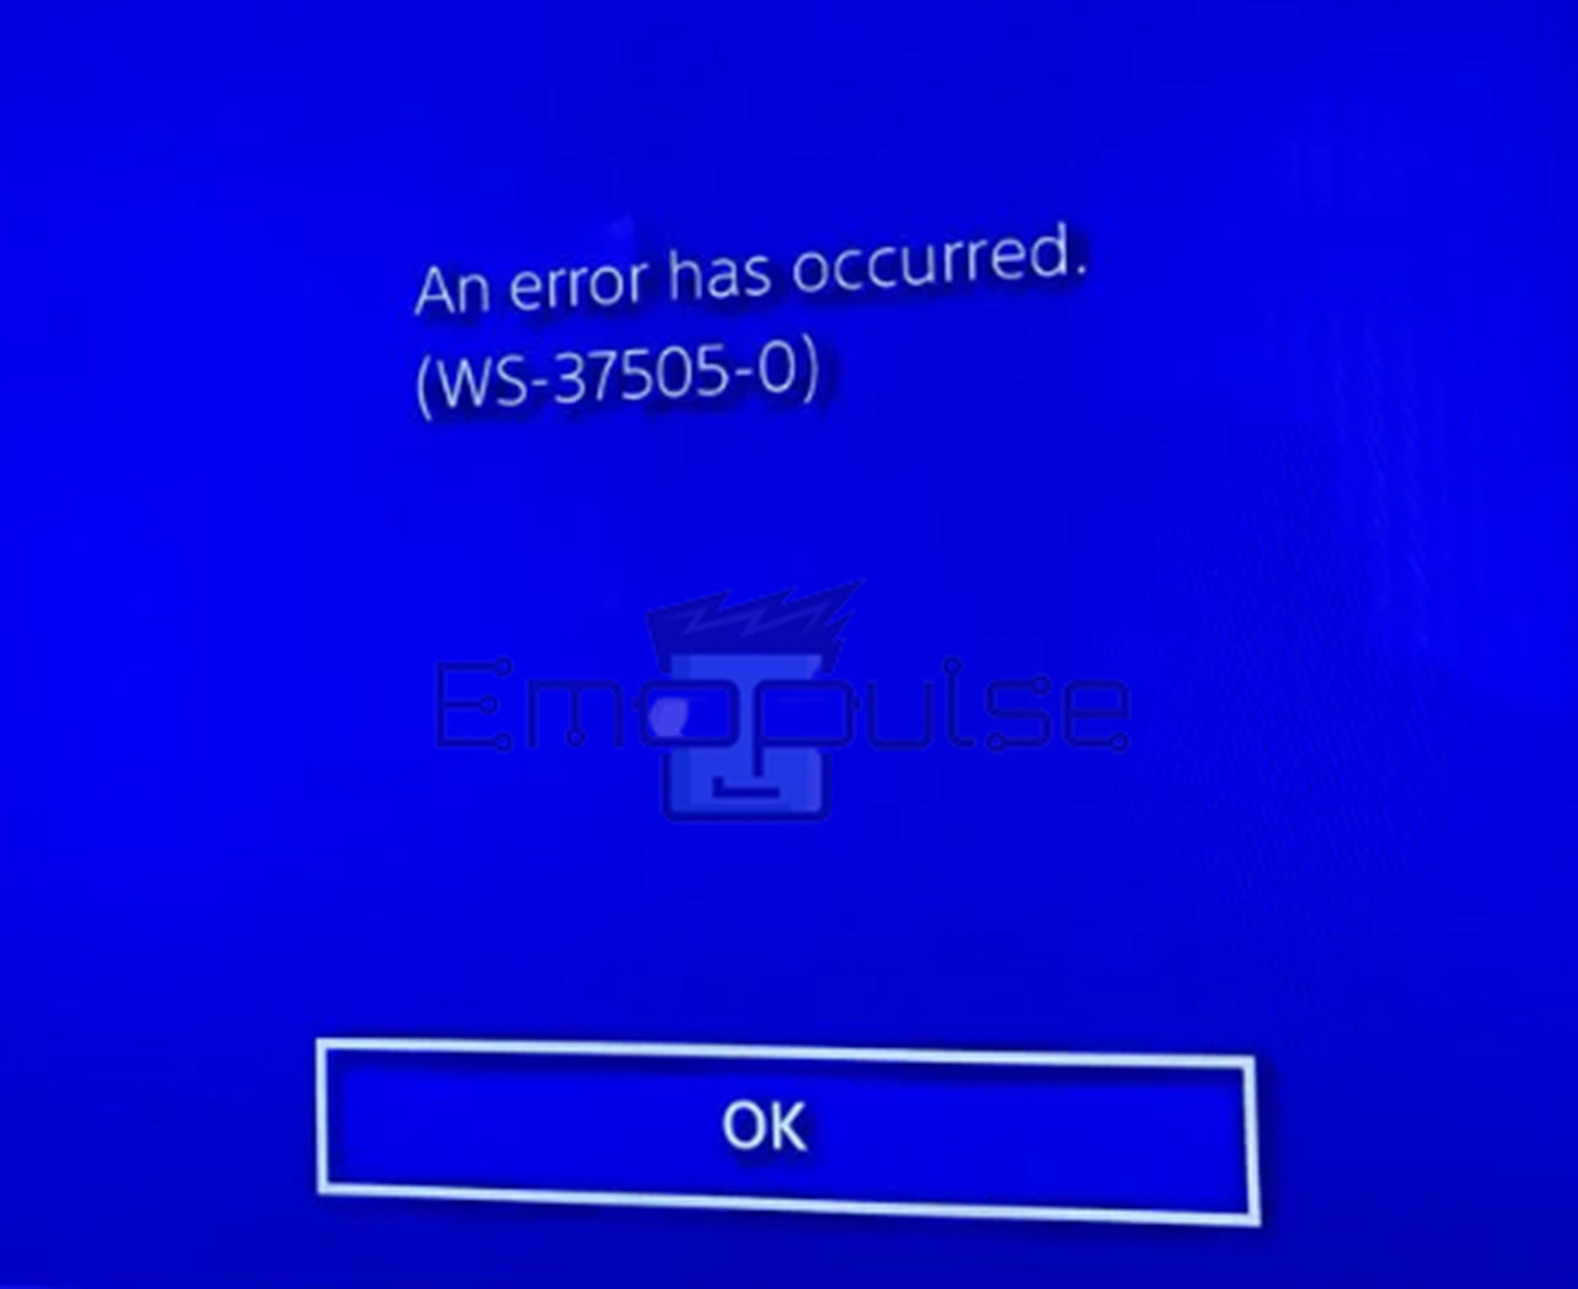 PS4 error WS-37505-0